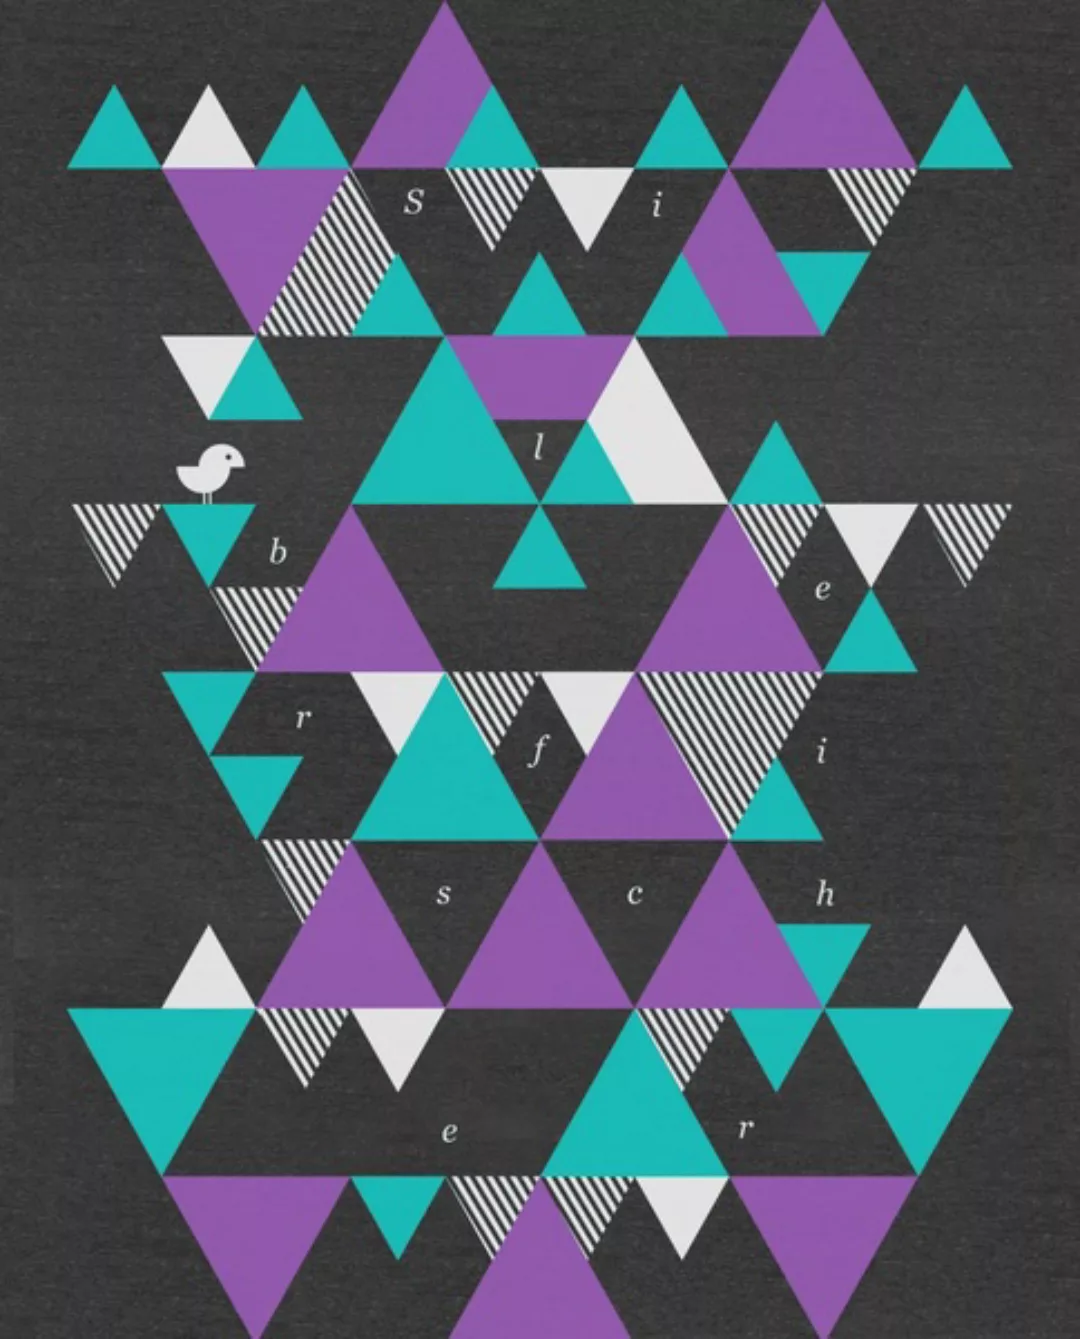 Shirt Men "Triangle" günstig online kaufen